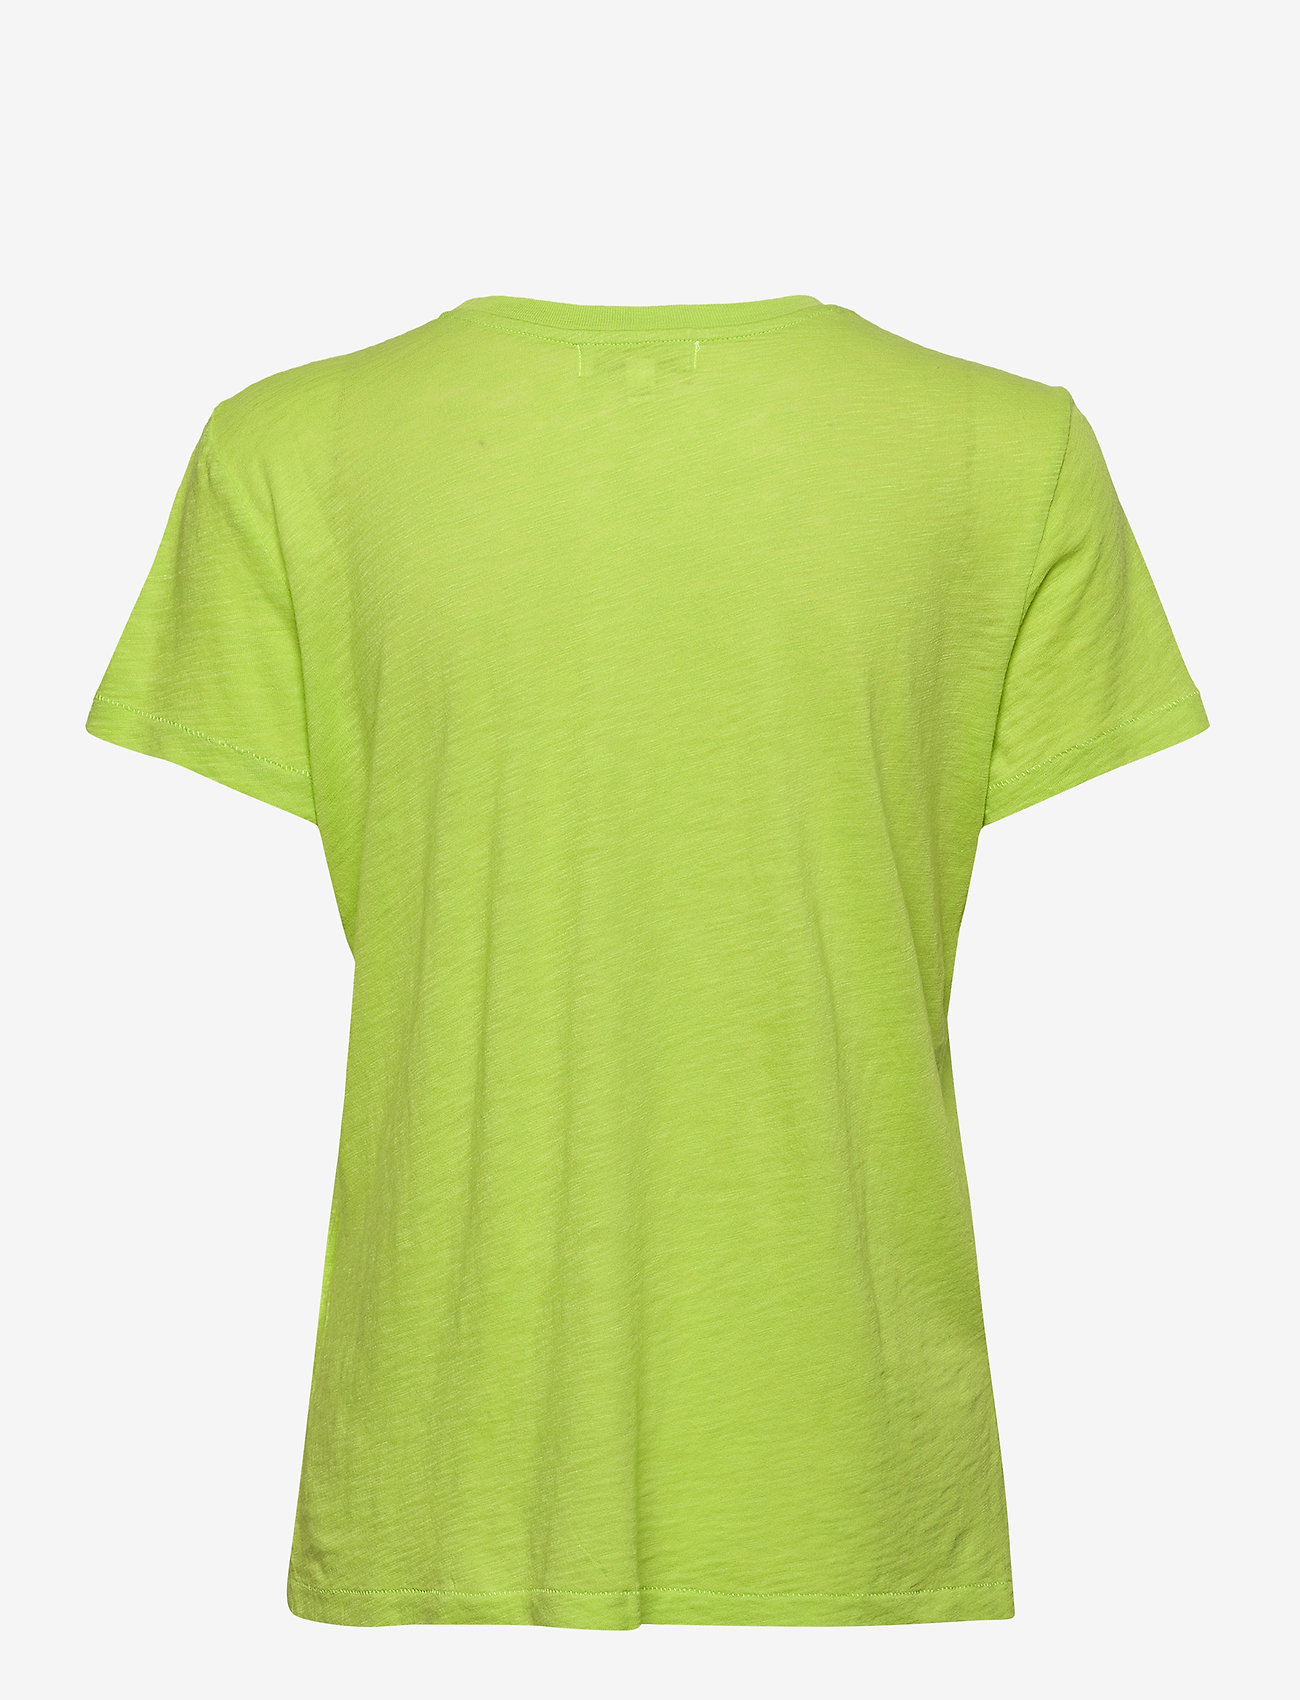 PJ Salvage - s/s shirt - yläosat - lime green - 1